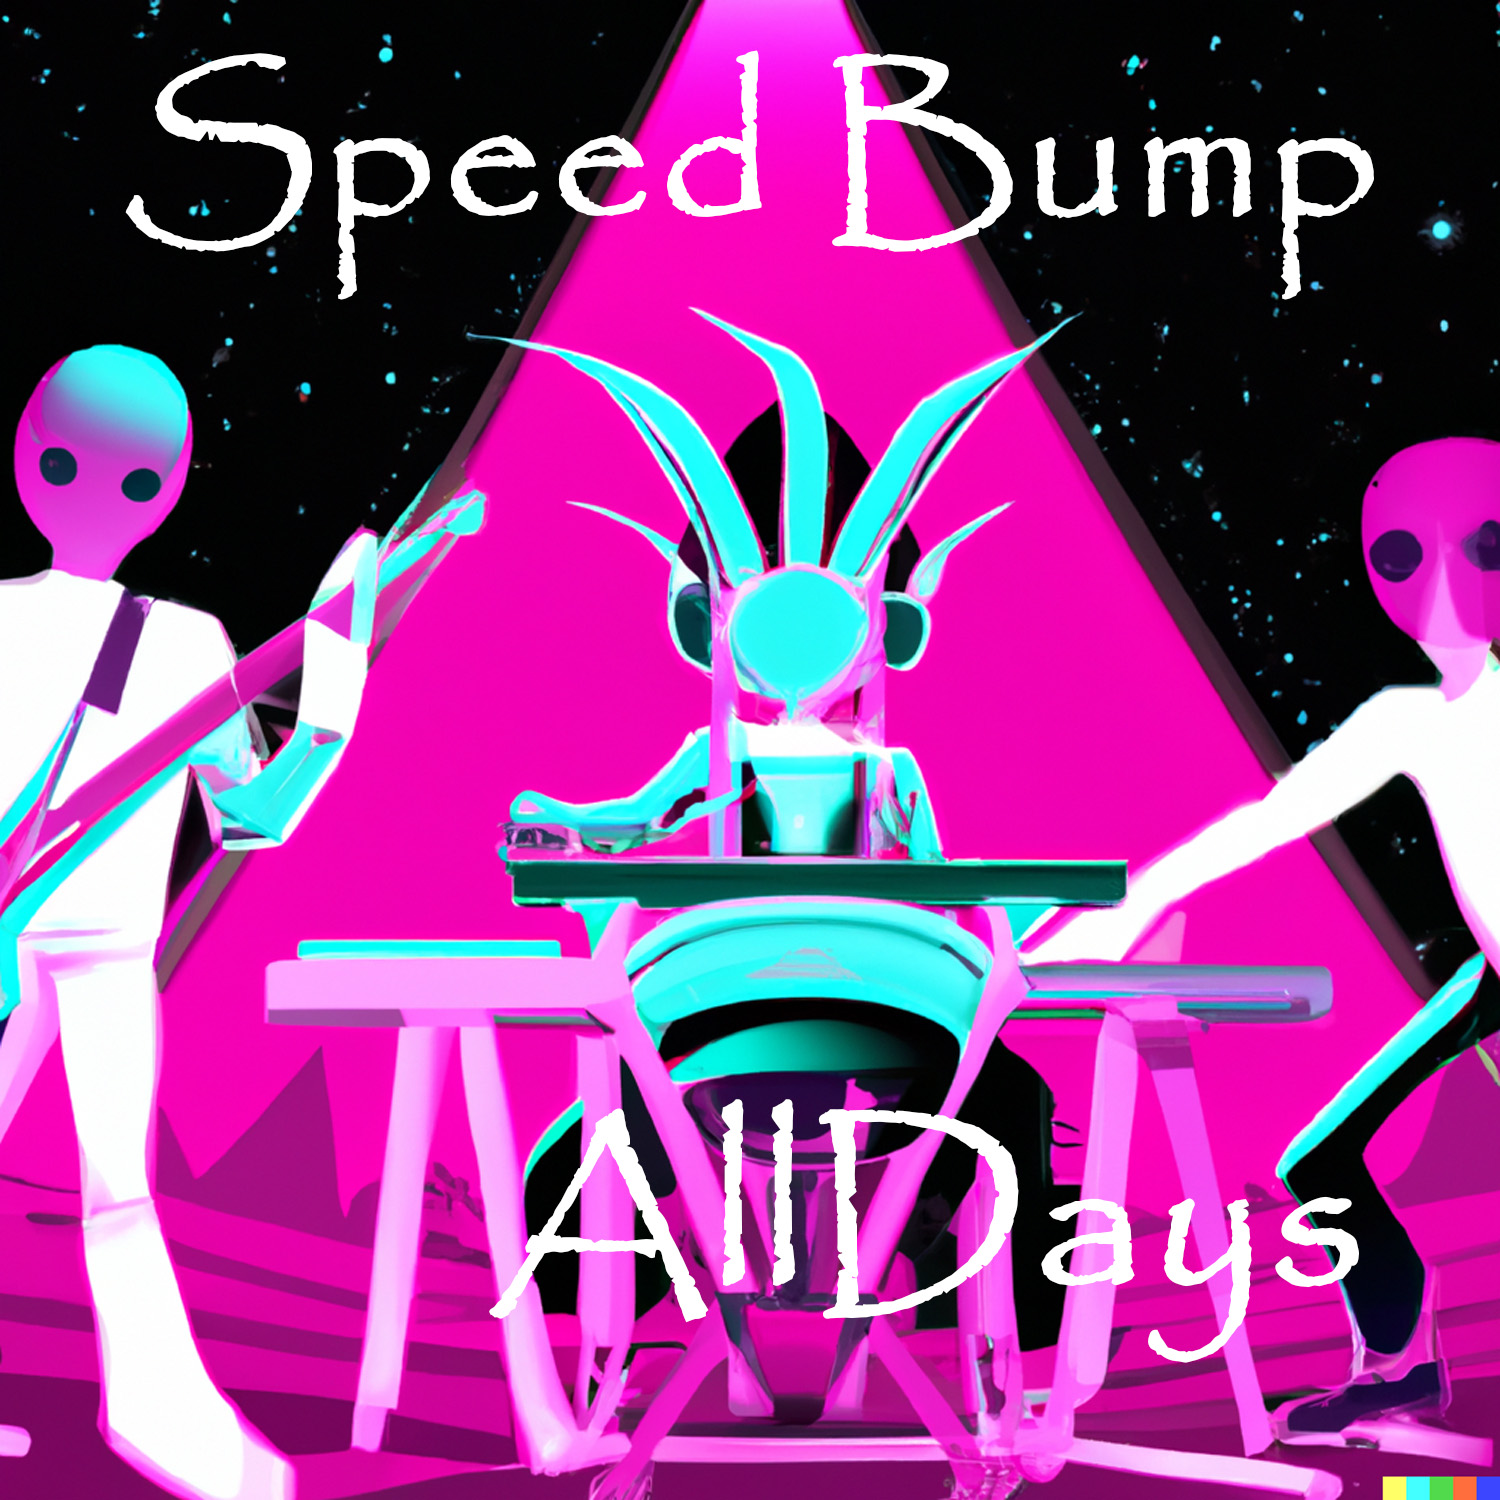 AllDays "Speed Bump" Full Song NFTs